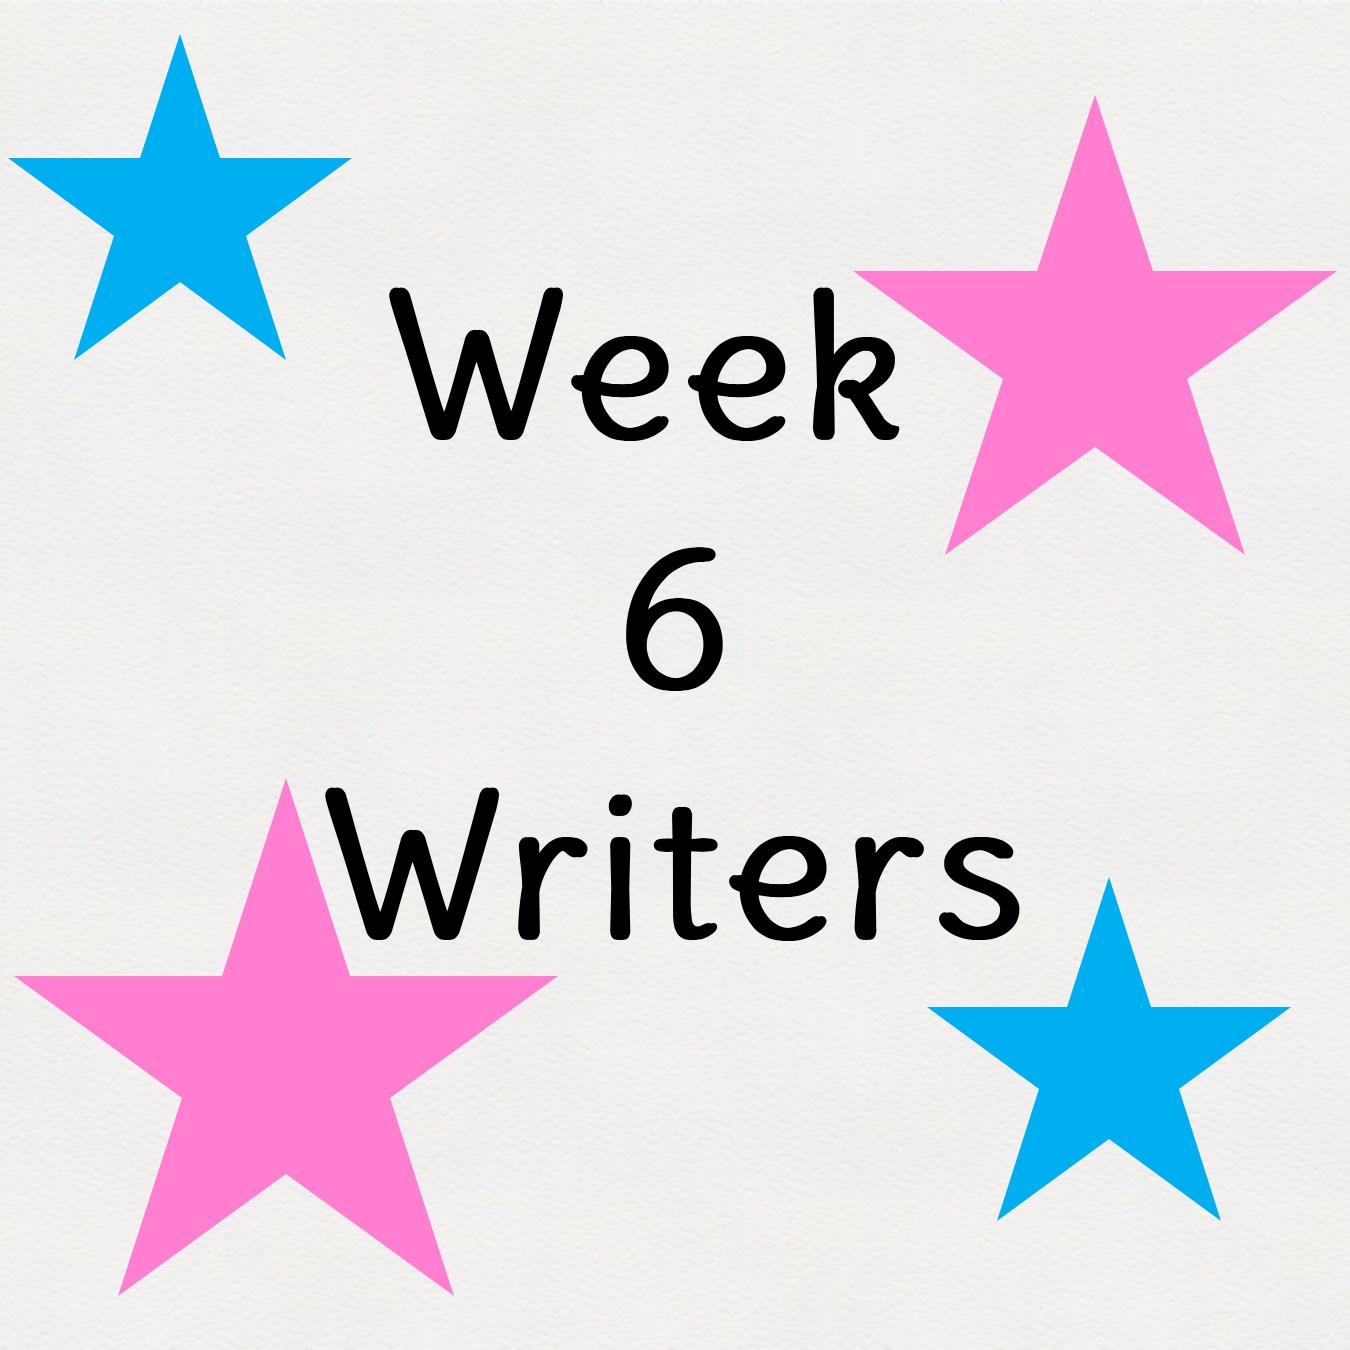 Week 6 Writers 